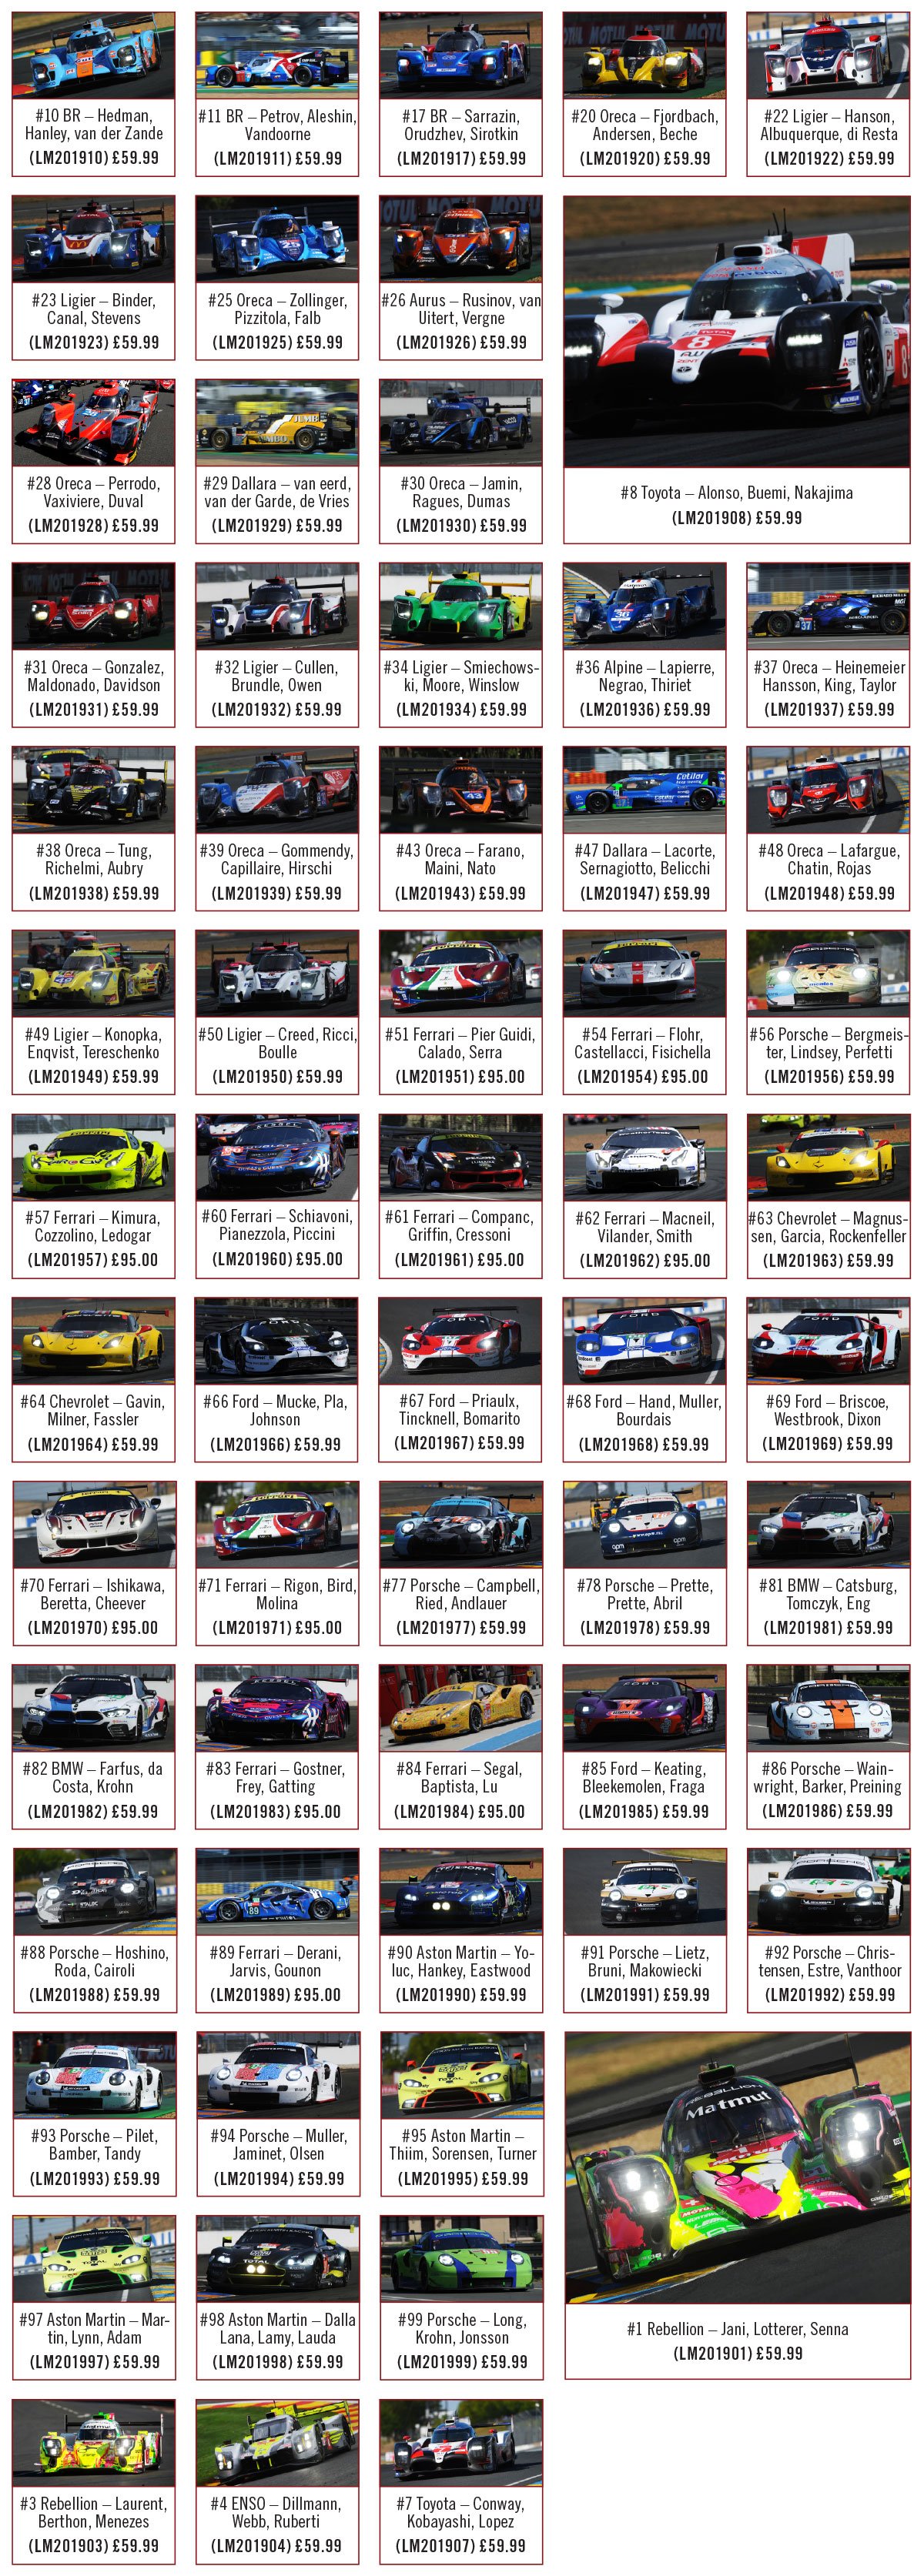 1:43 2019 Le Mans Grid Diecast Model Car Review